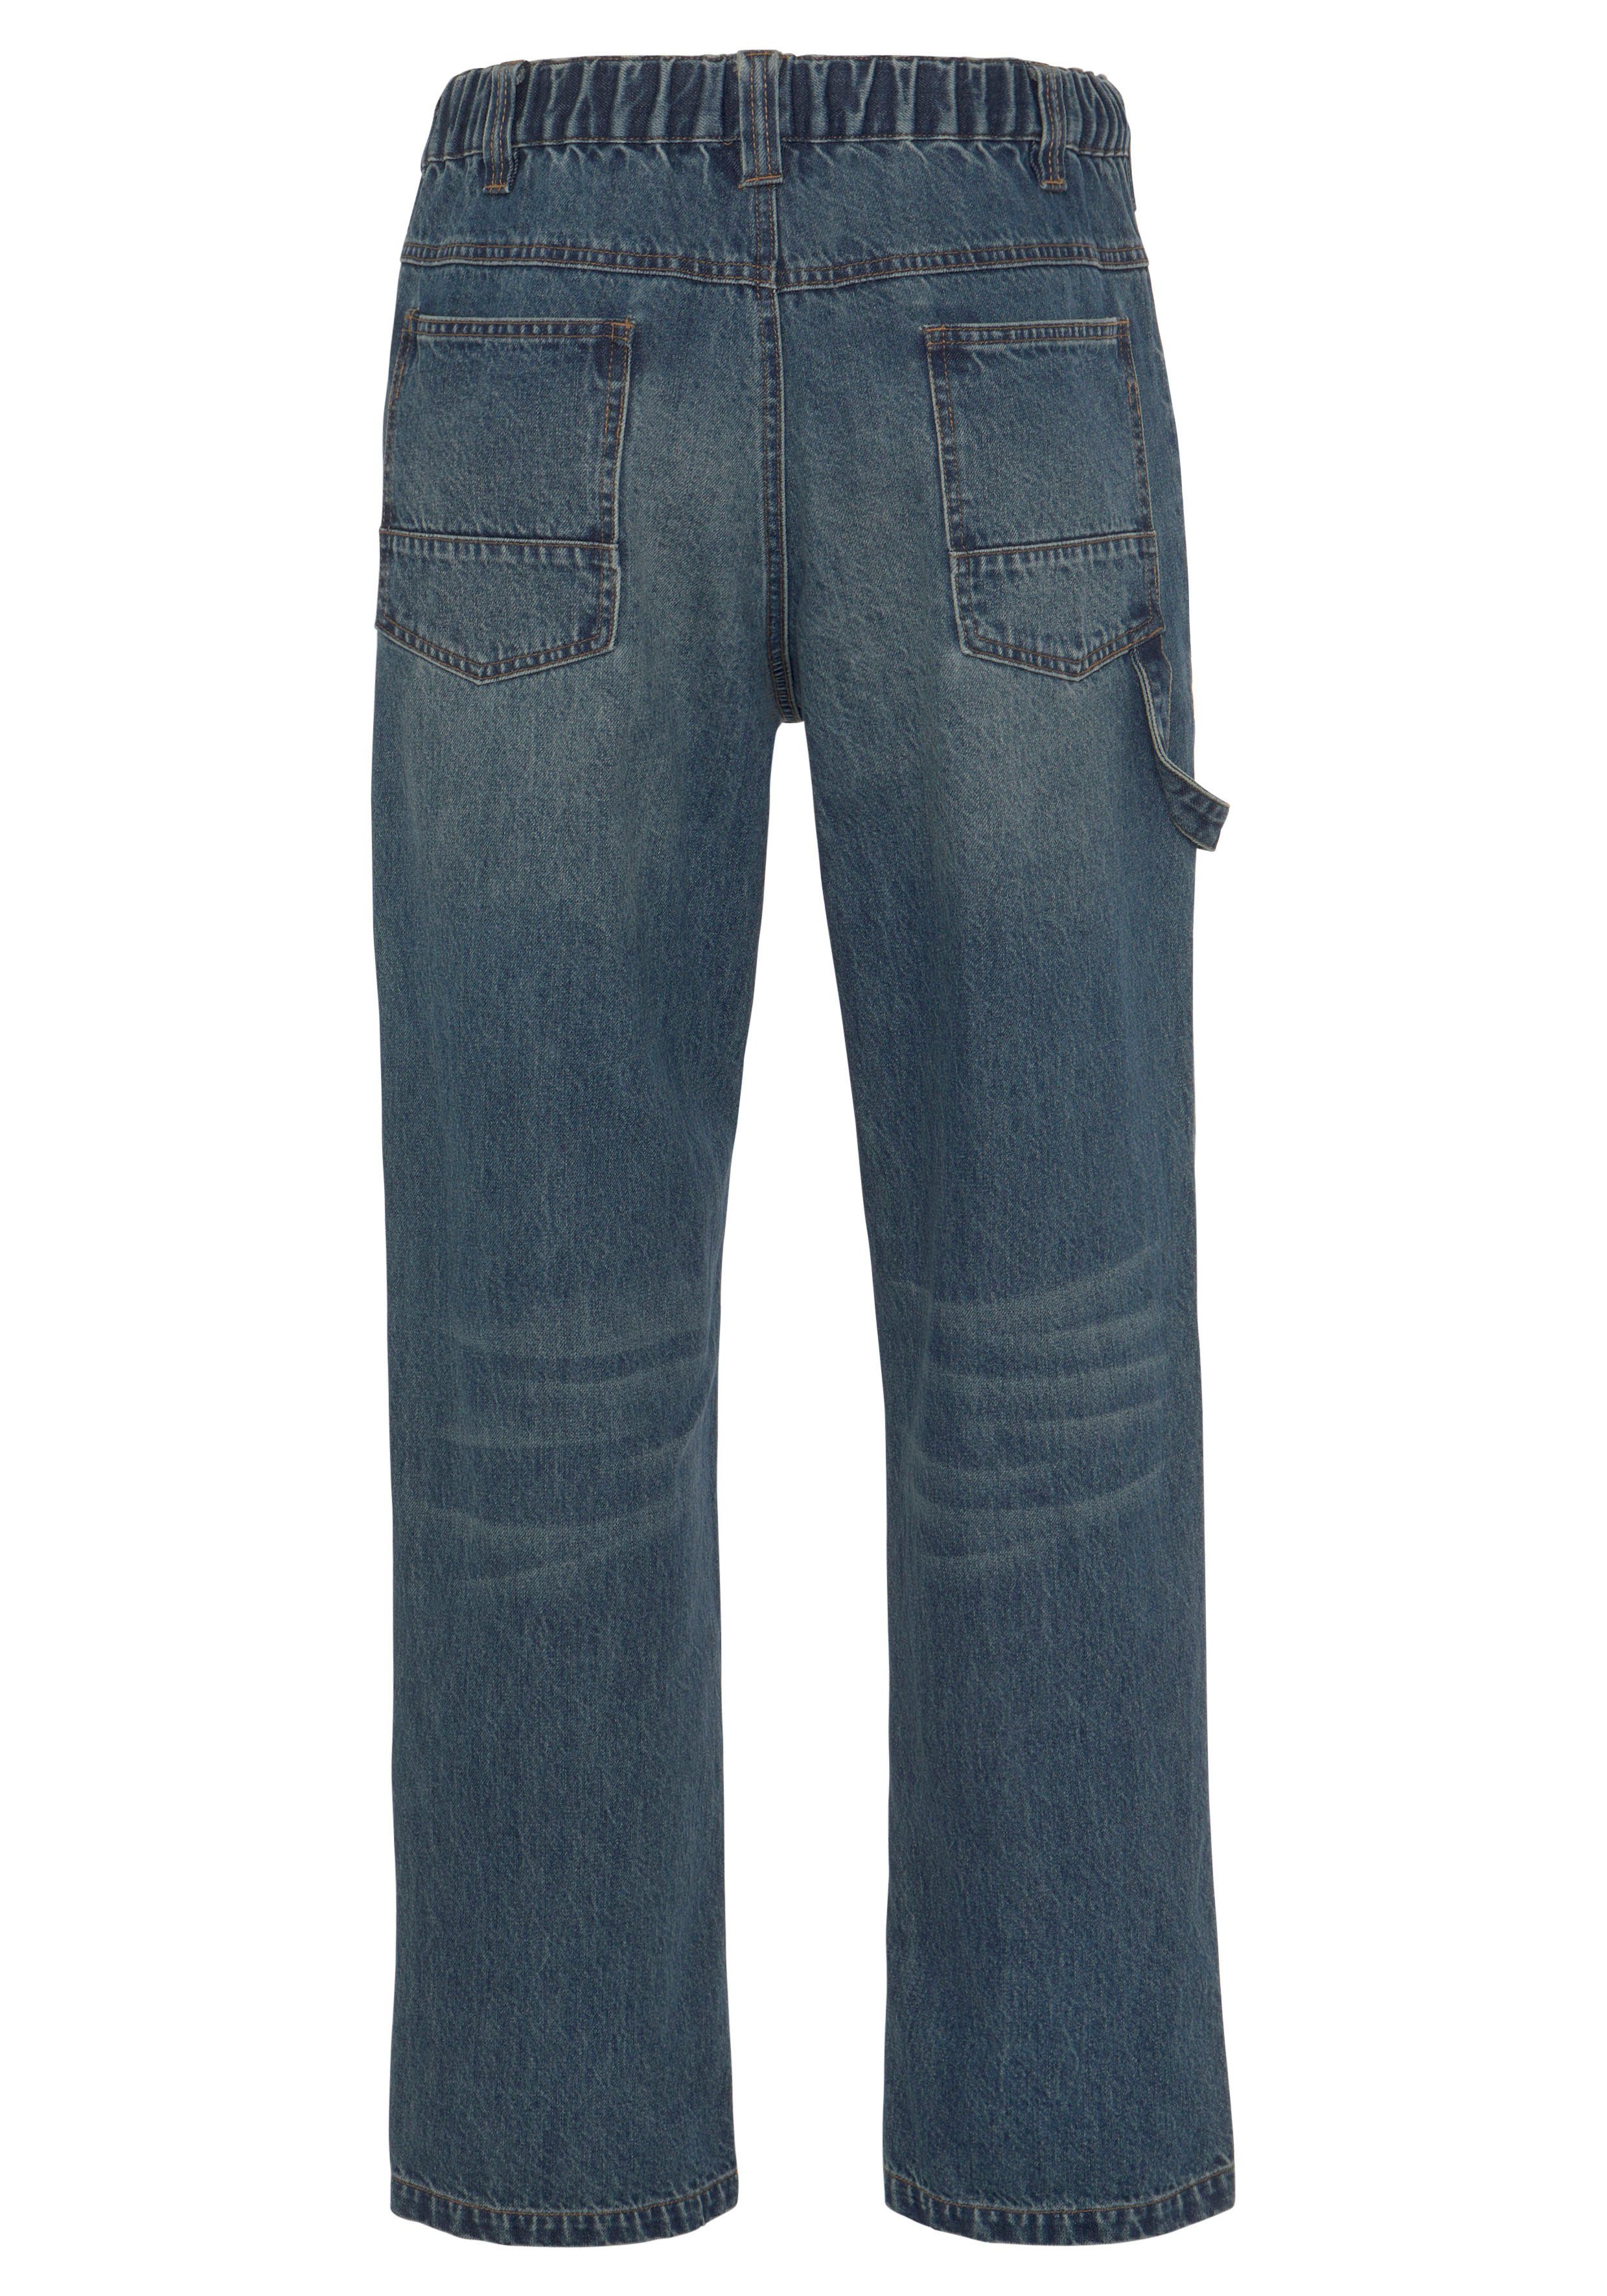 Bund, dehnbarem Country 6 mit Baumwolle, 100% (aus comfort Taschen fit) Jeans praktischen Arbeitshose robuster Jeansstoff, Northern Cargo mit